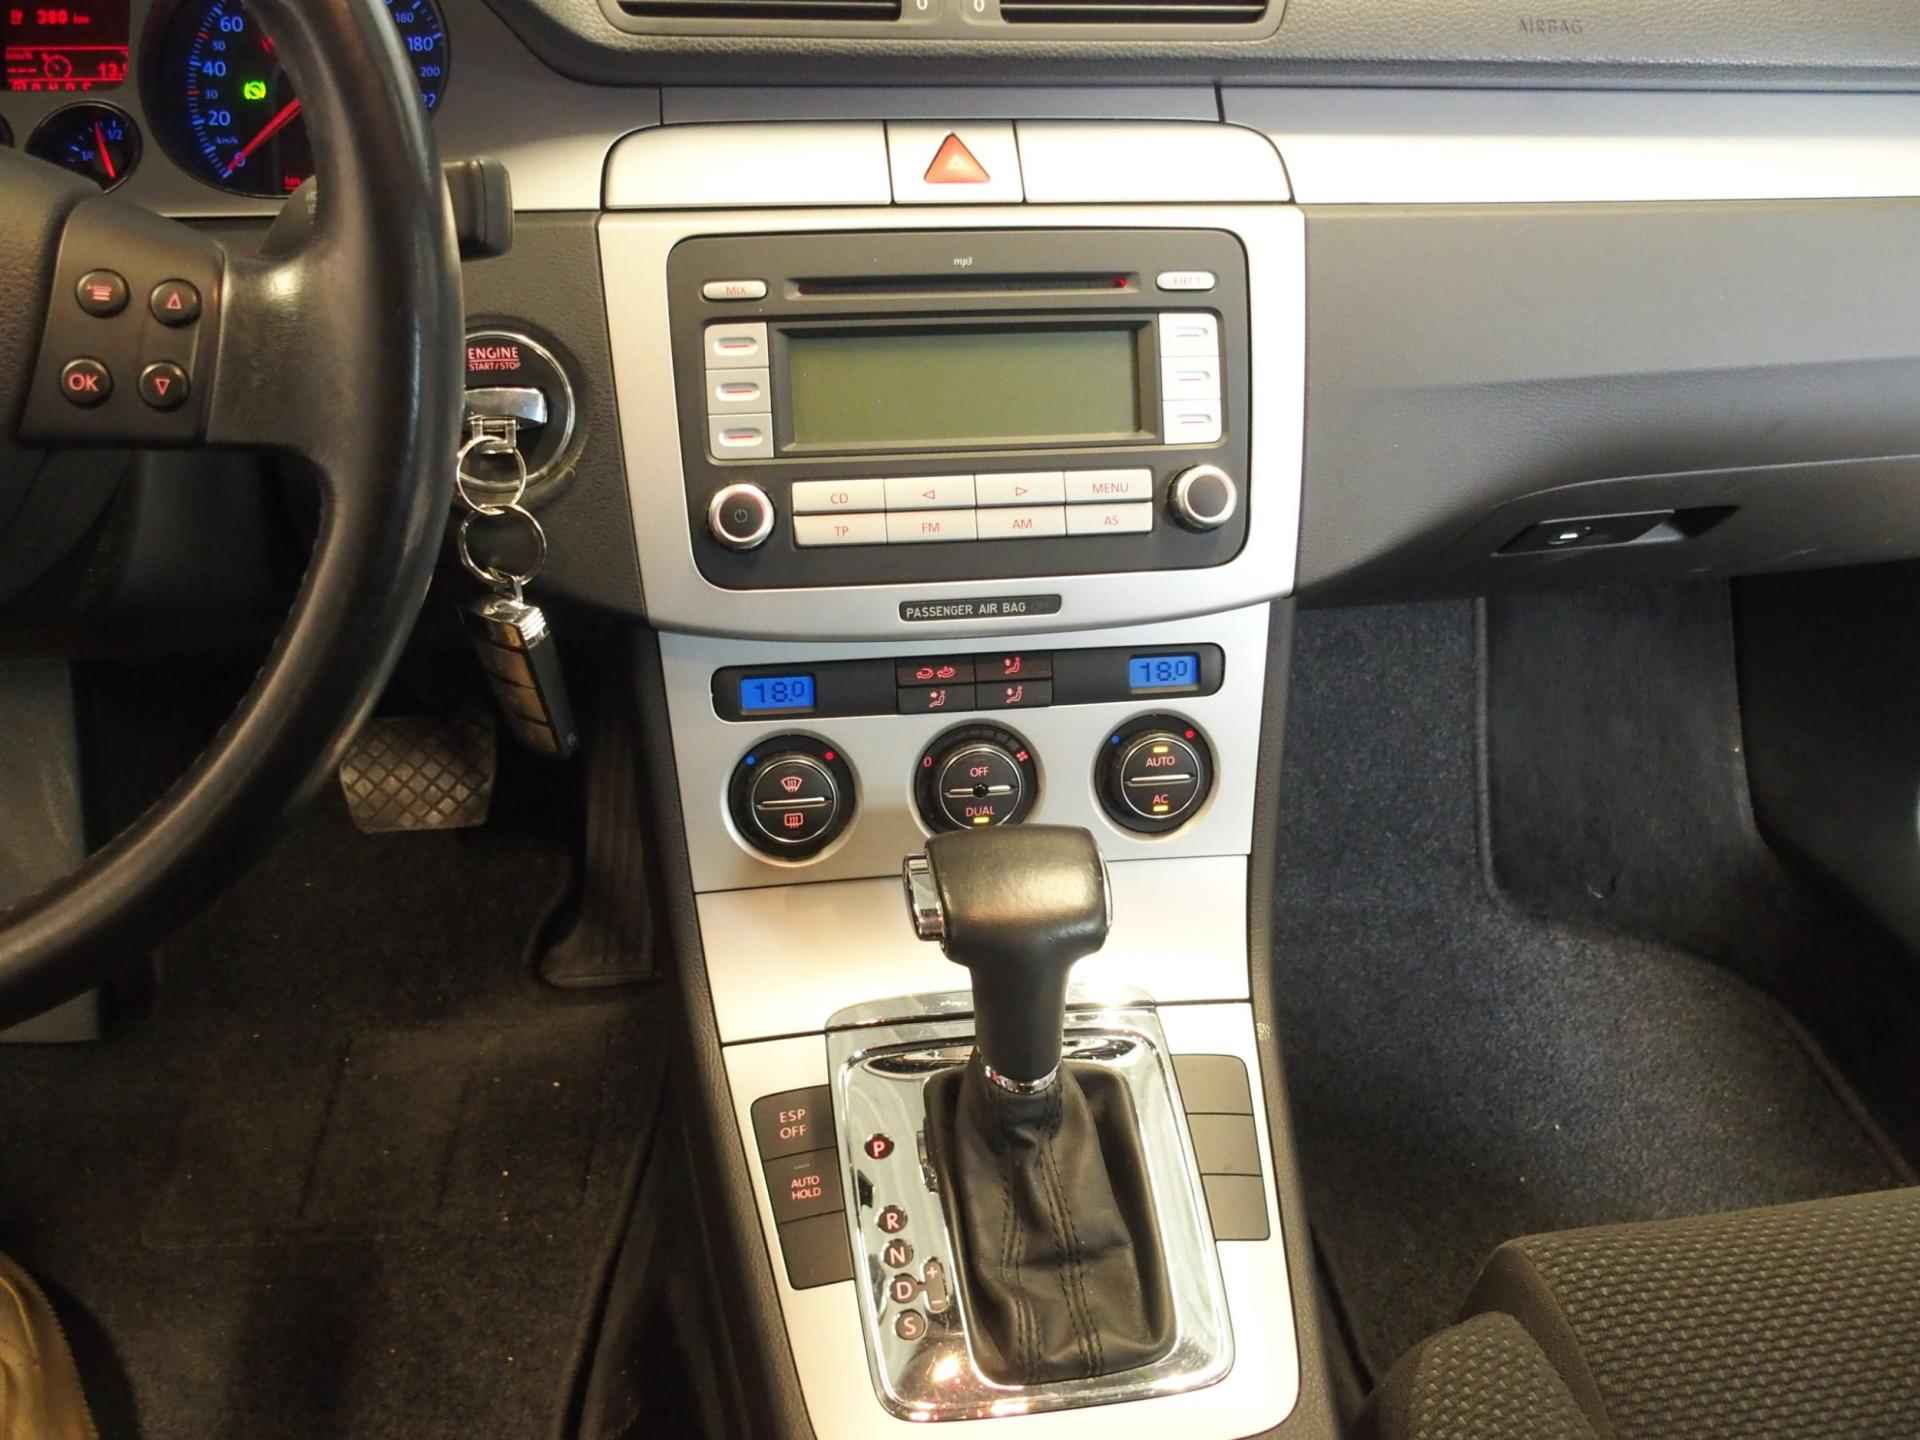 Volkswagen Passat 1.8 TFSI Automaat Comfort-line Trekhaak, automaat, cruise controle, complete OH historie - 25/35